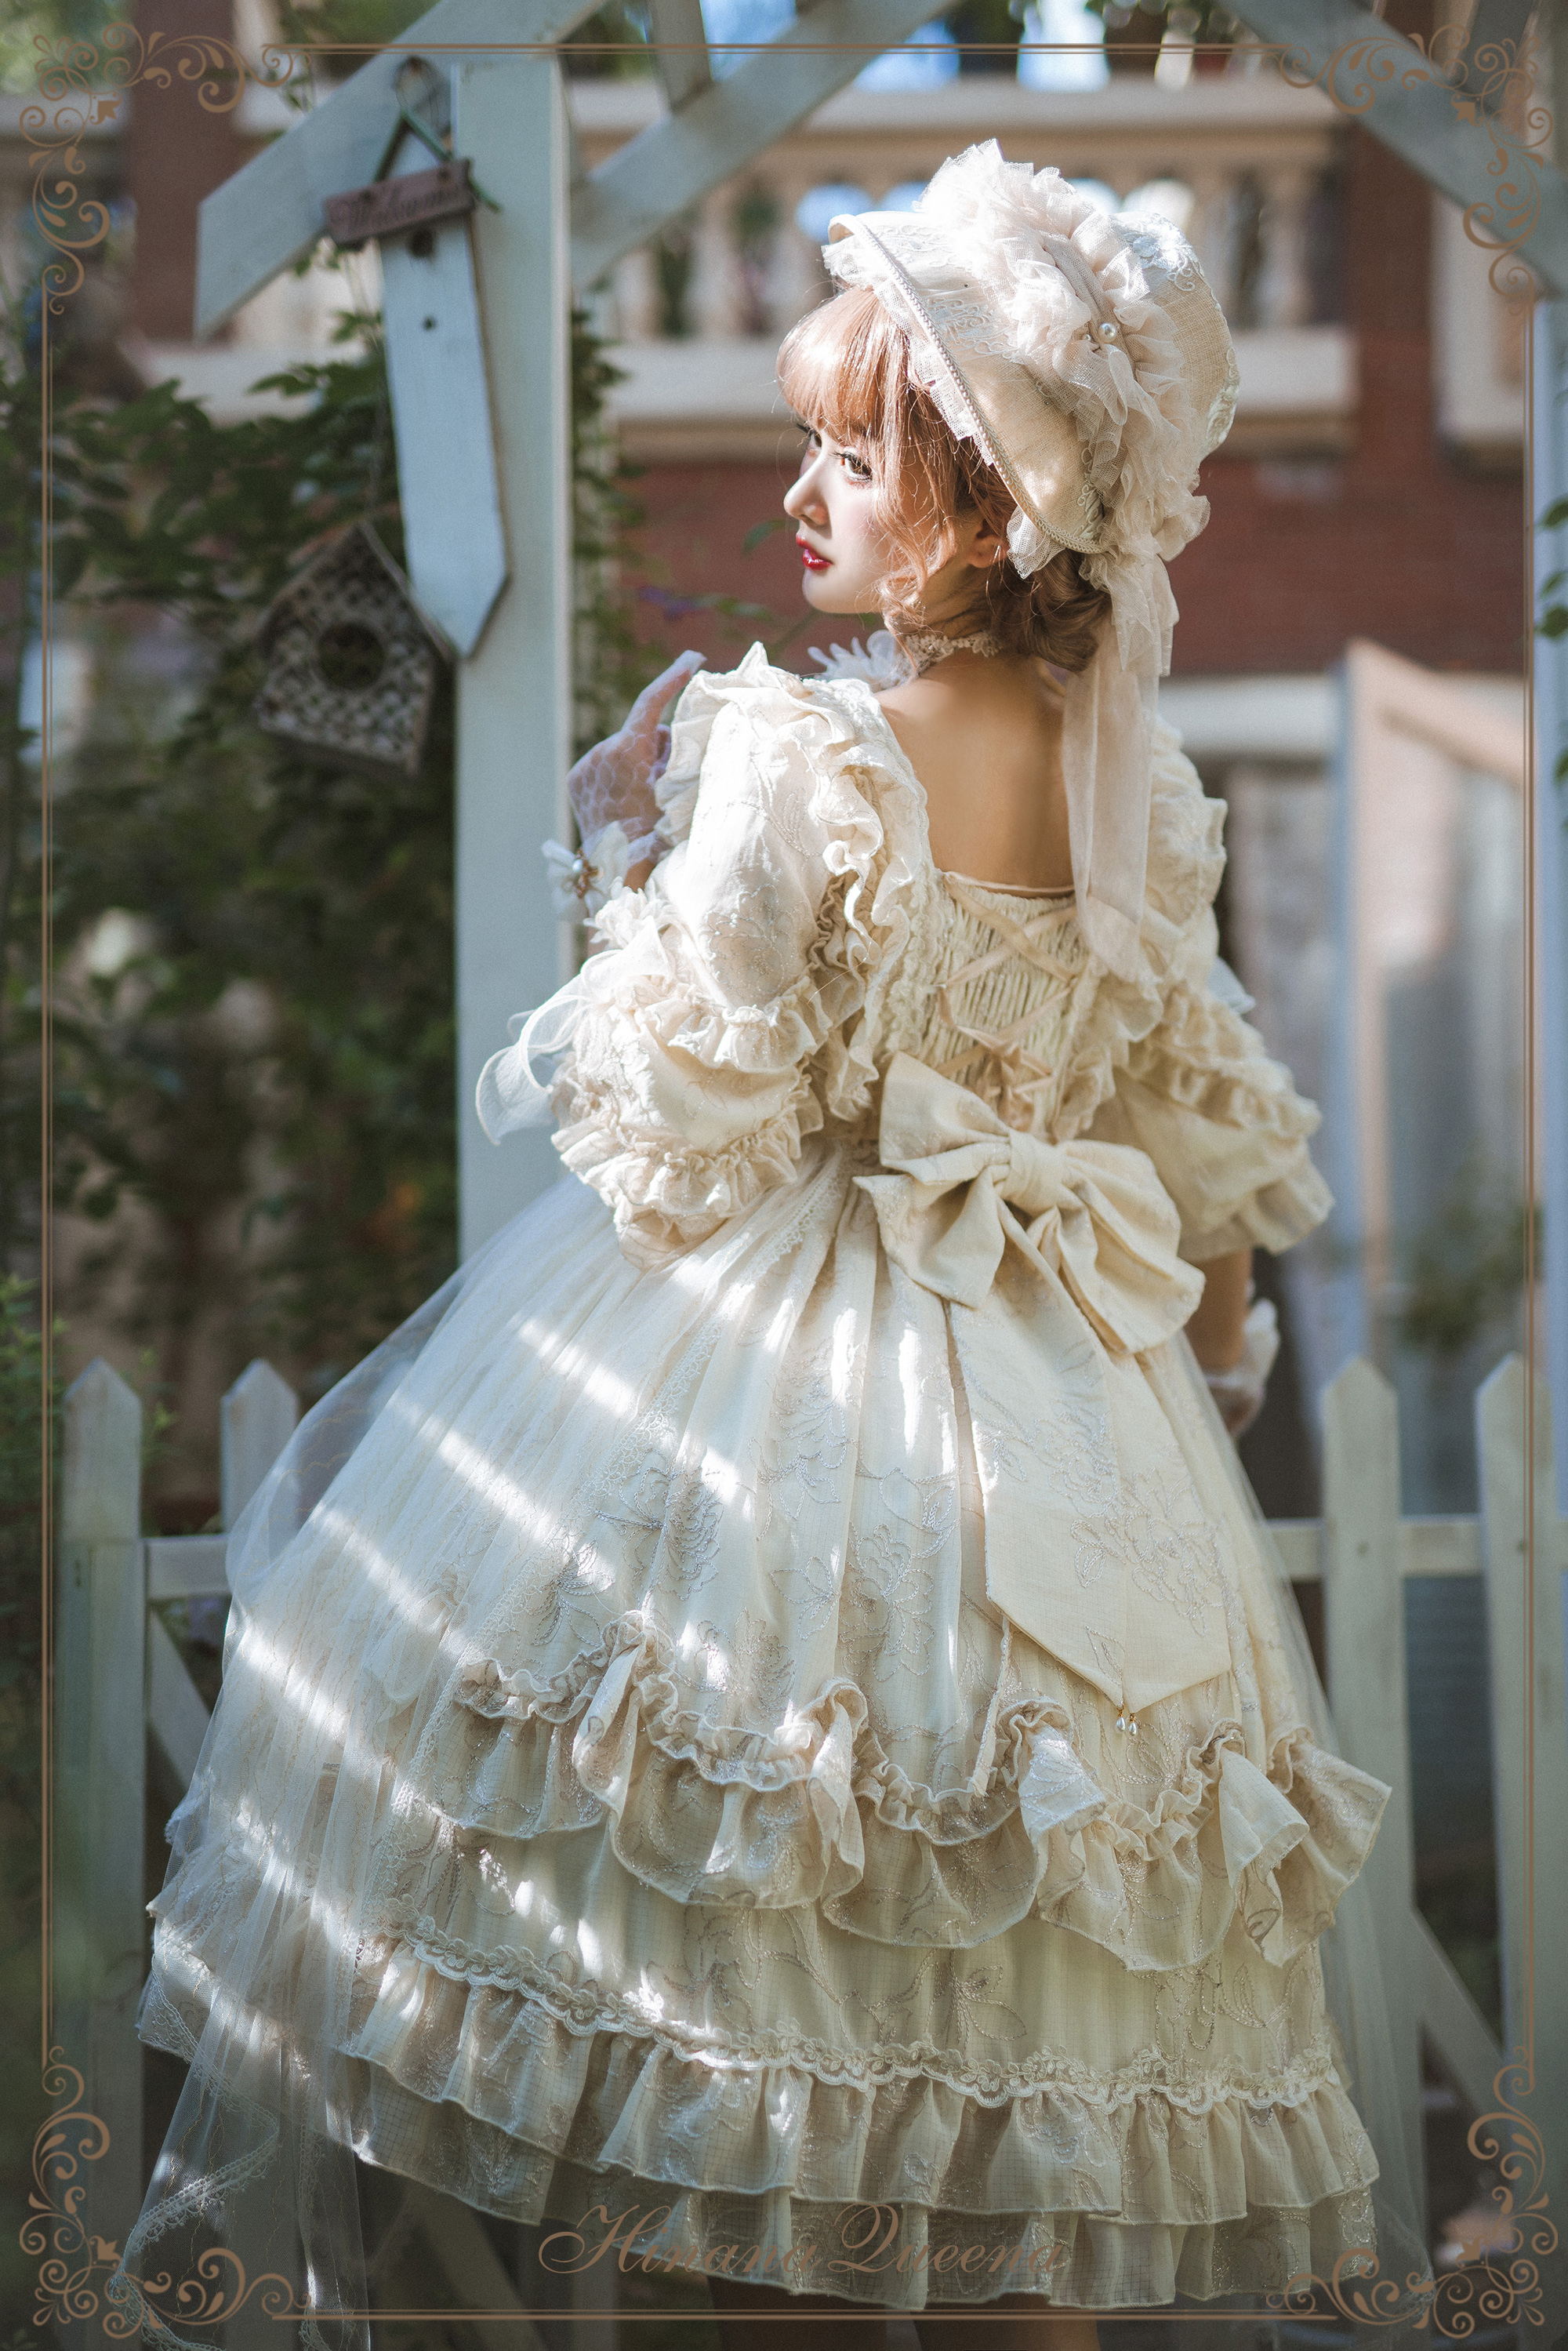 パニエ ヴィンテージ ロリィタ ホワイト アイボリー ボリューム ロココ ドレス1枚で完結できるボリュームです